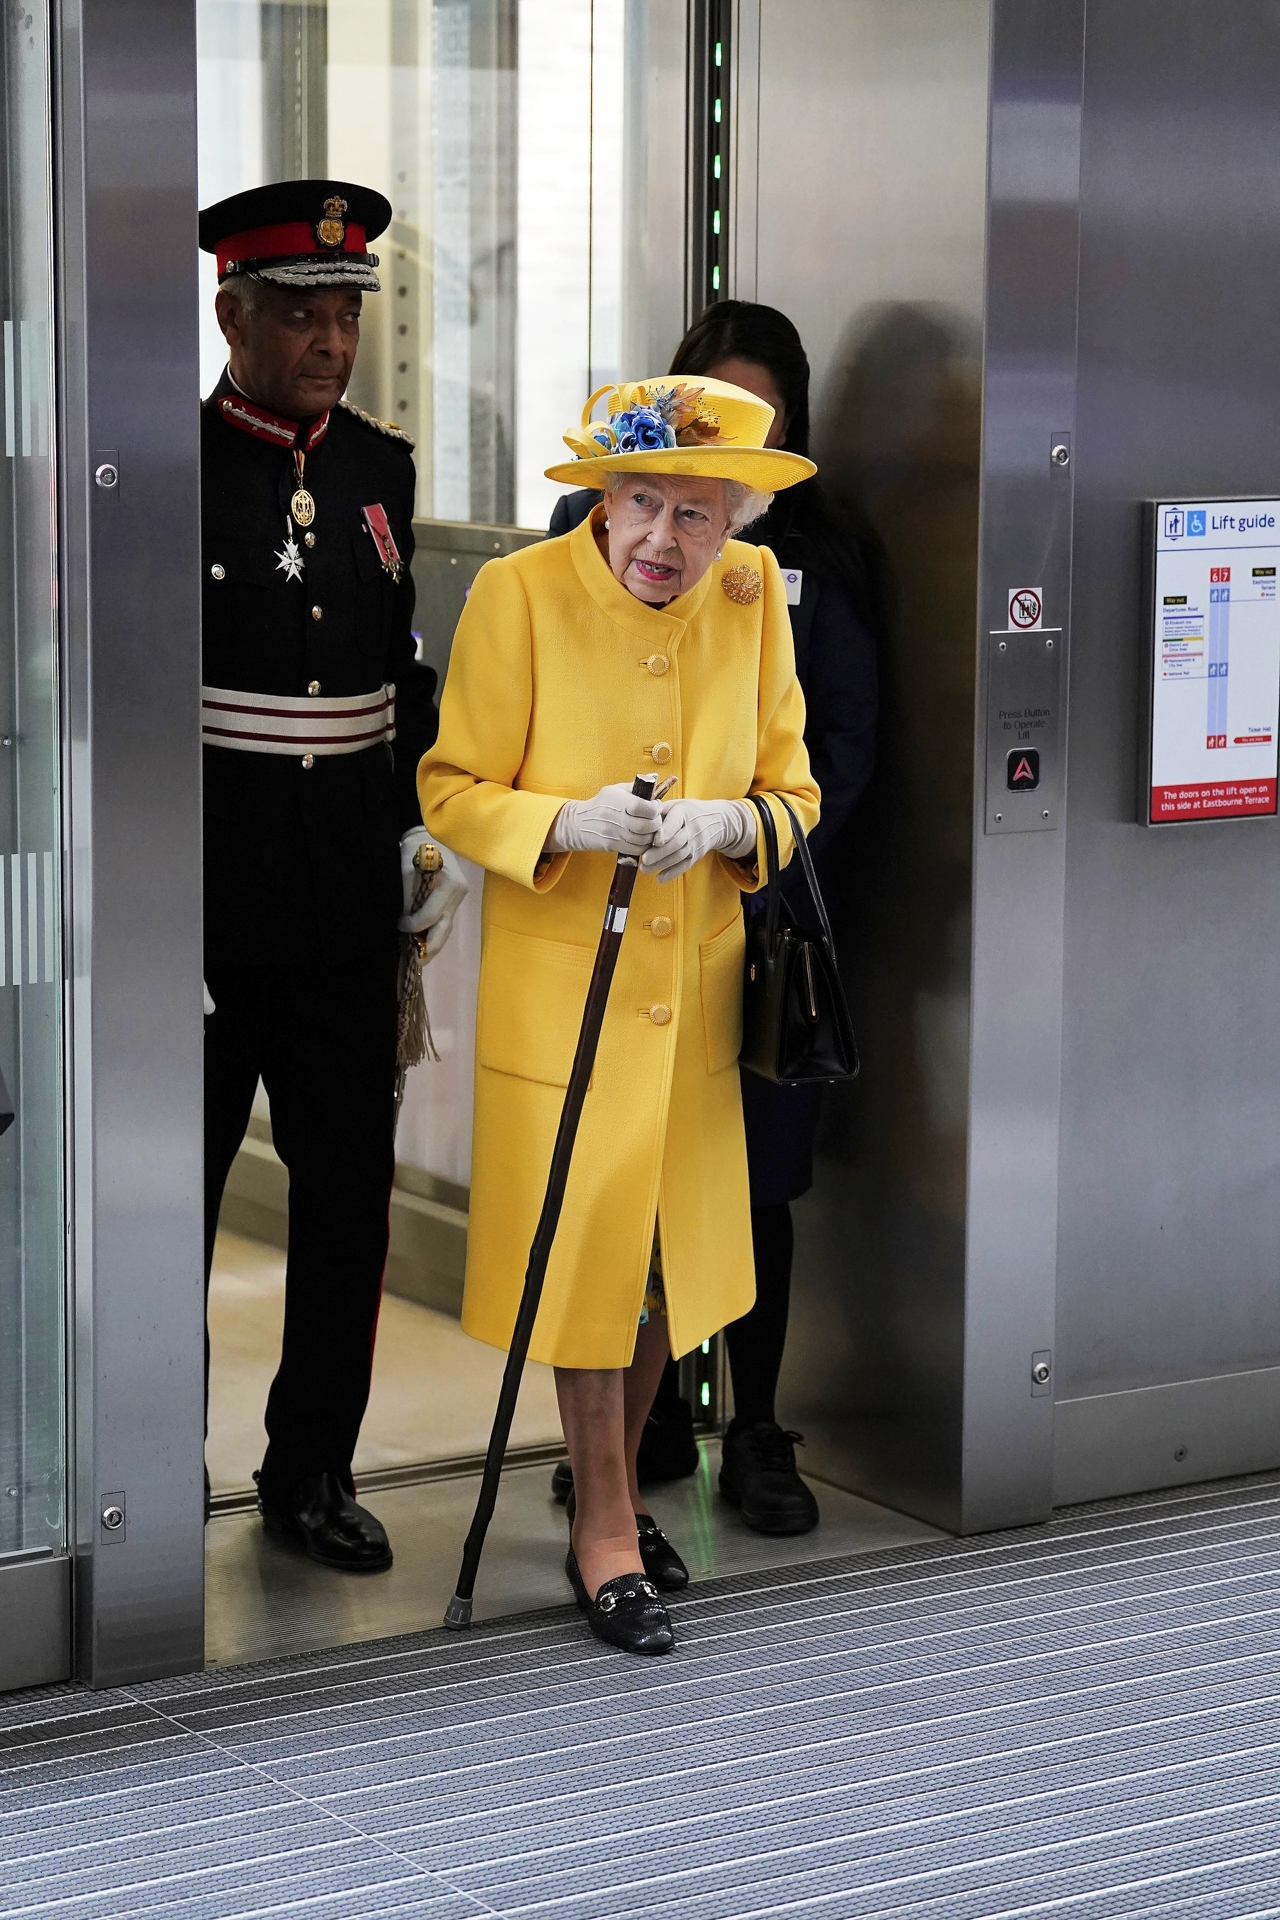 Daily Mailin mukaan kuningattarella on ”hyvät ja huonot päivänsä”, ja siksi hänen osallistumisensa edustustilaisuuksiin vahvistuu vasta viime hetkillä. Kuvassa kuningatar vierailee Lontoon Paddingtonin asemalla.